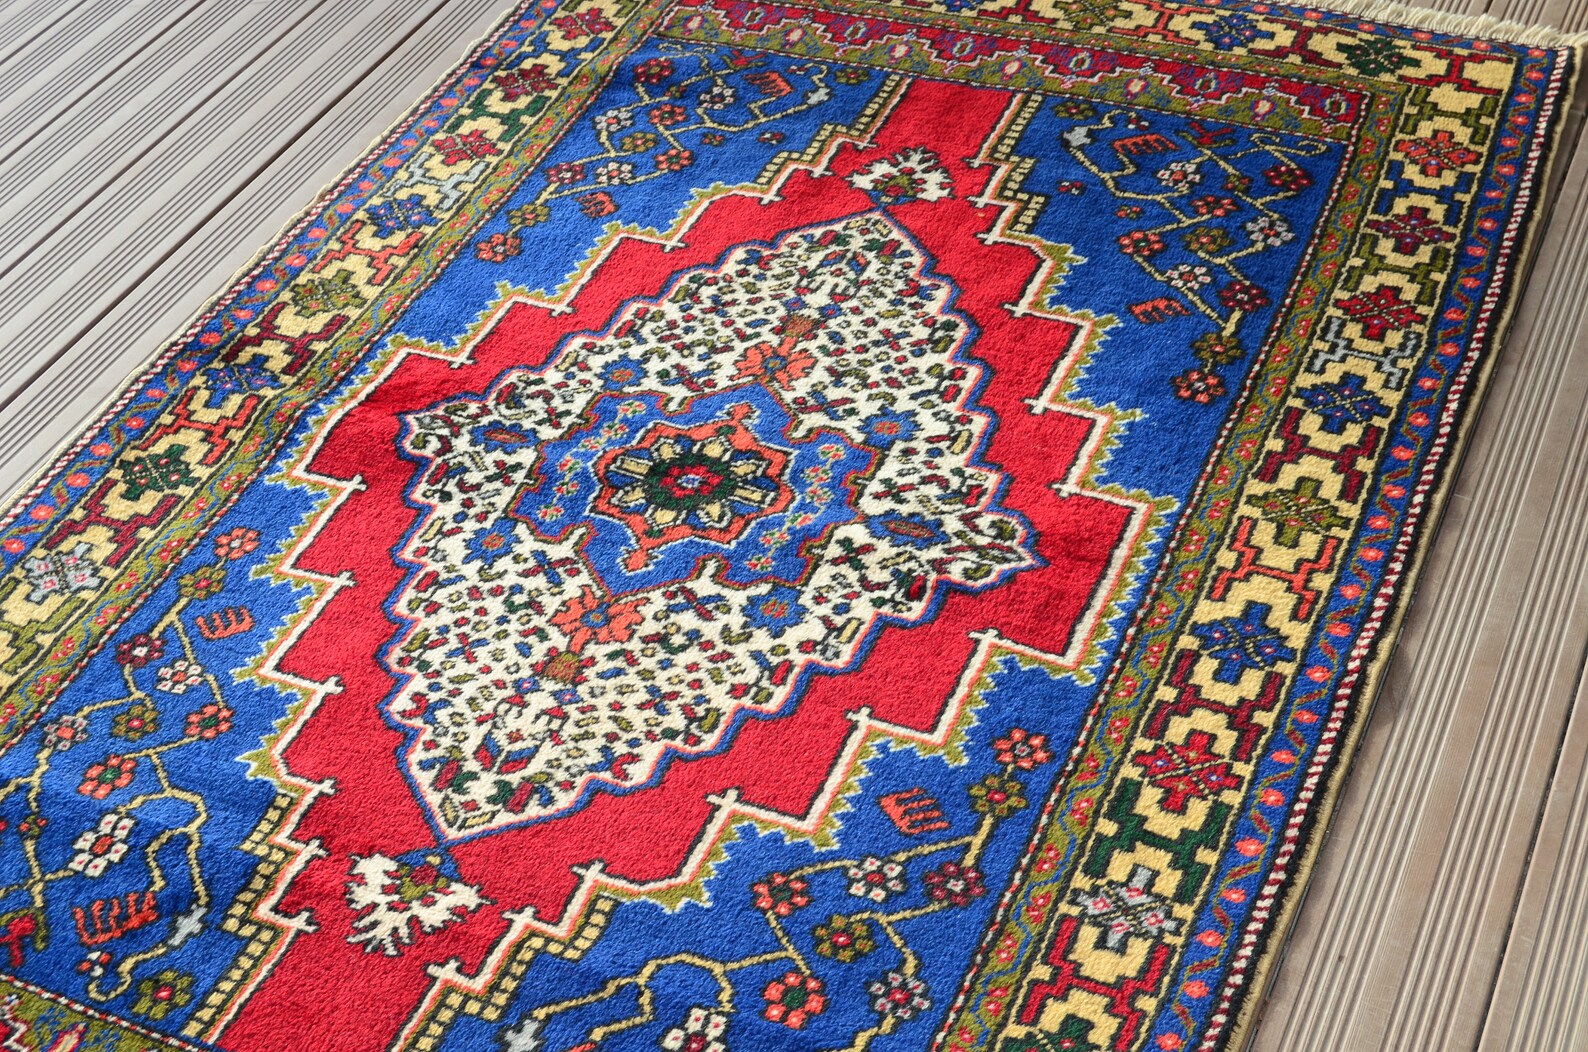 floral living room rug